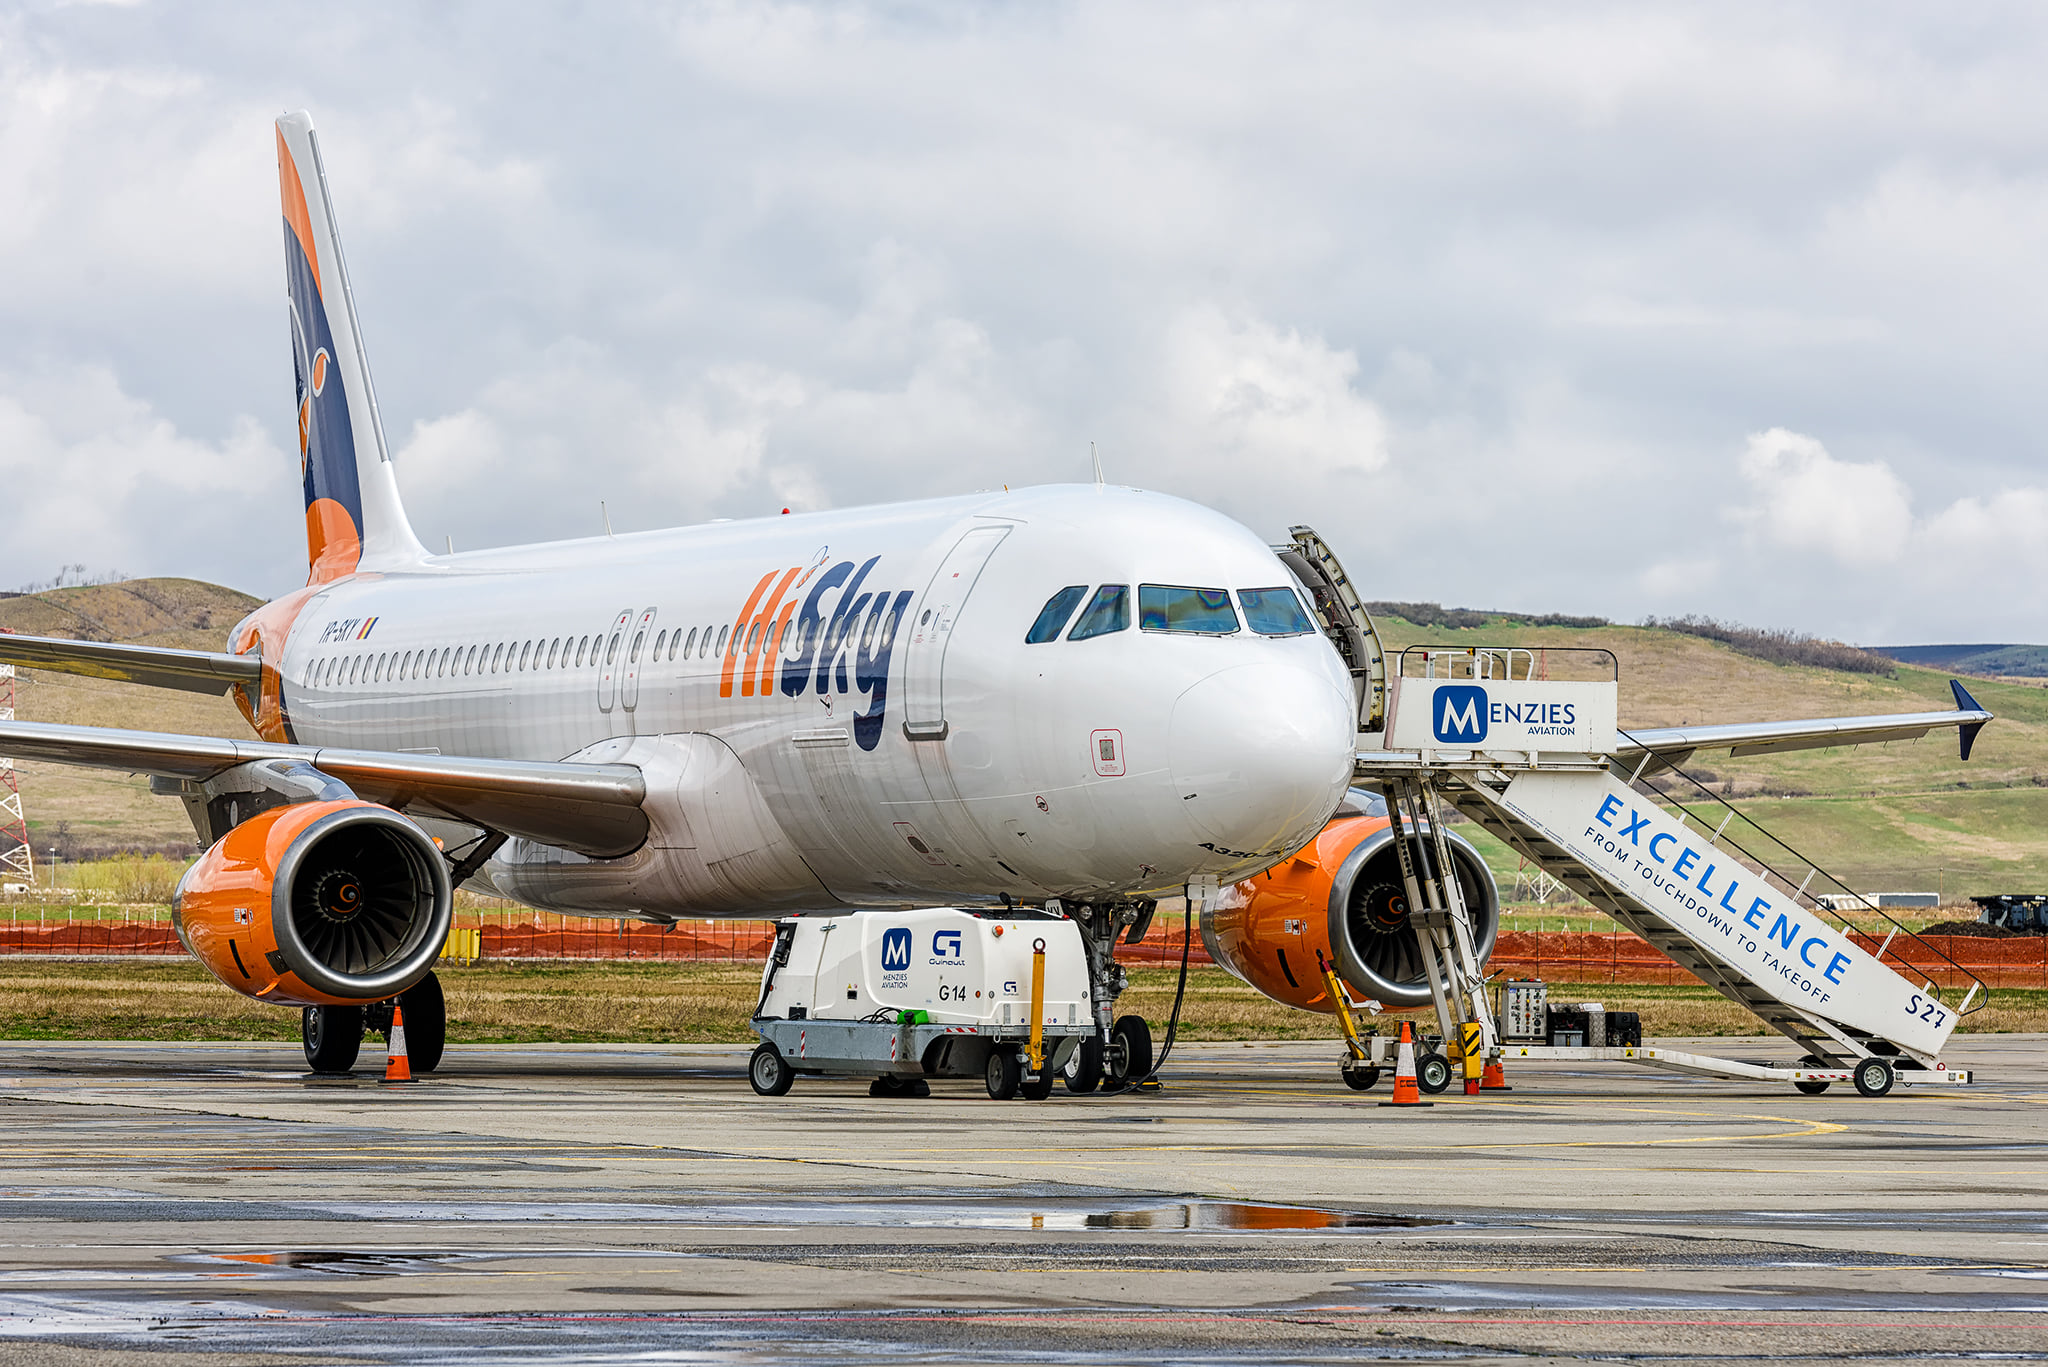 Zboruri Cluj-București operate de HiSky de pe Aeroportul Cluj, de săptămâna viitoare